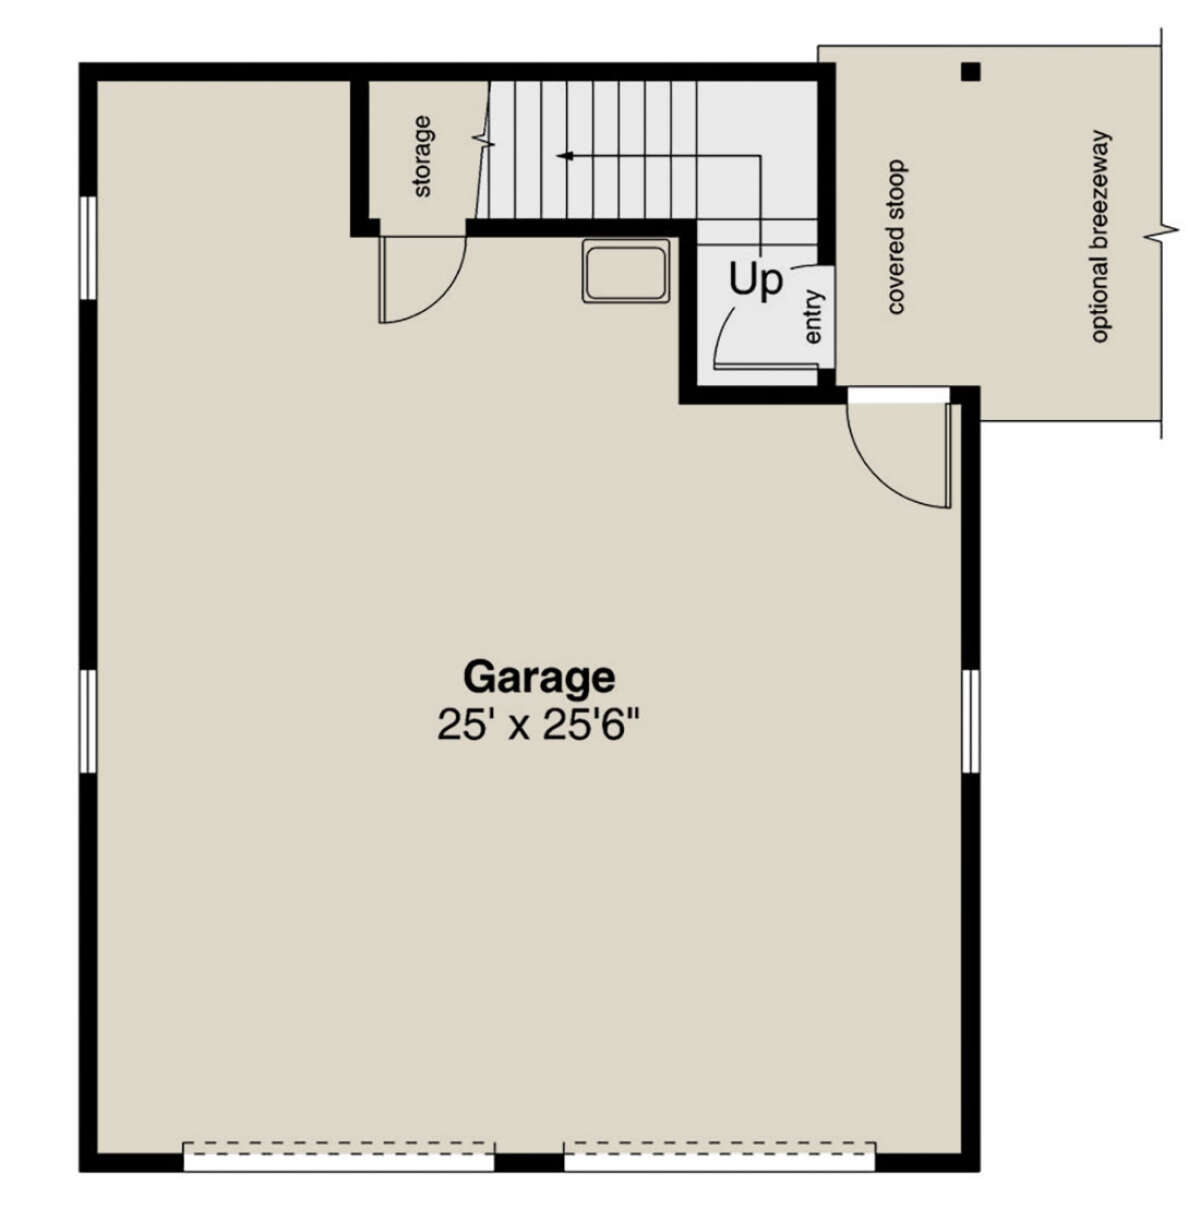 Garage Floor for House Plan #035-00915